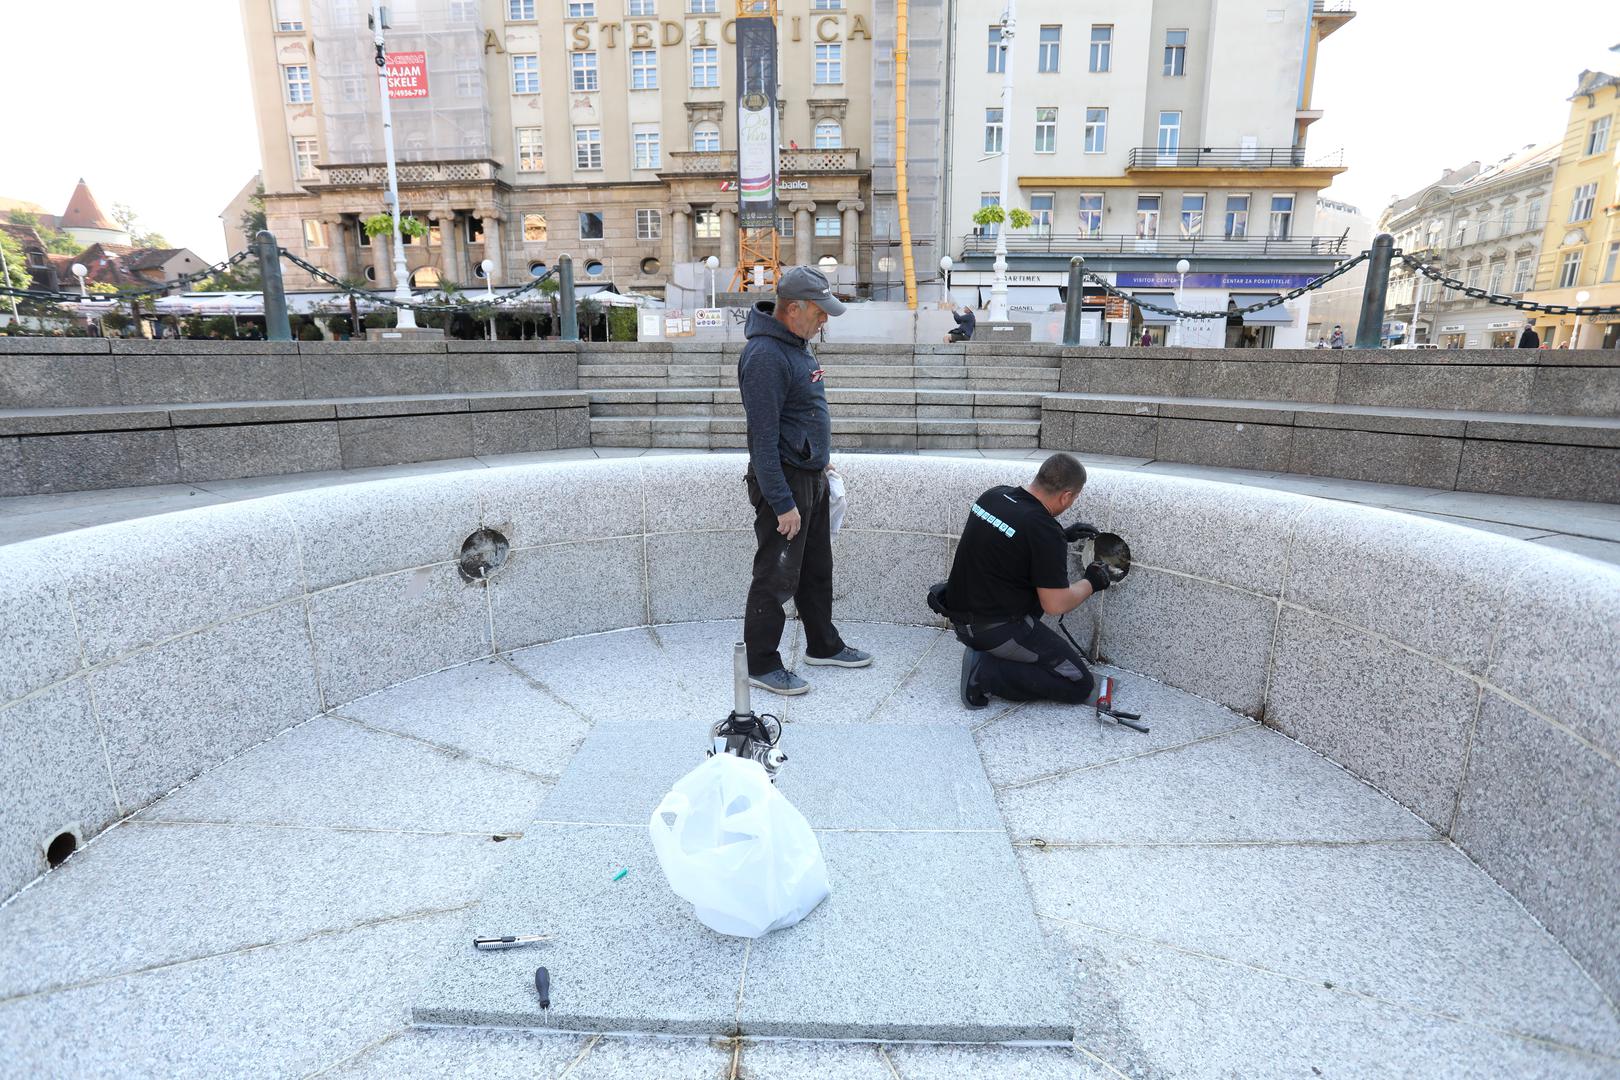 07.09.2021., Zagreb - Mandusevac je jutros prolaznike docekao prazan. Nije u pitanju kvar nego su radnici poceli pripremu zagrebackih fontana za zimu i temeljito pregledavaju sve instalacije. Photo: Patrik Macek/PIXSELL